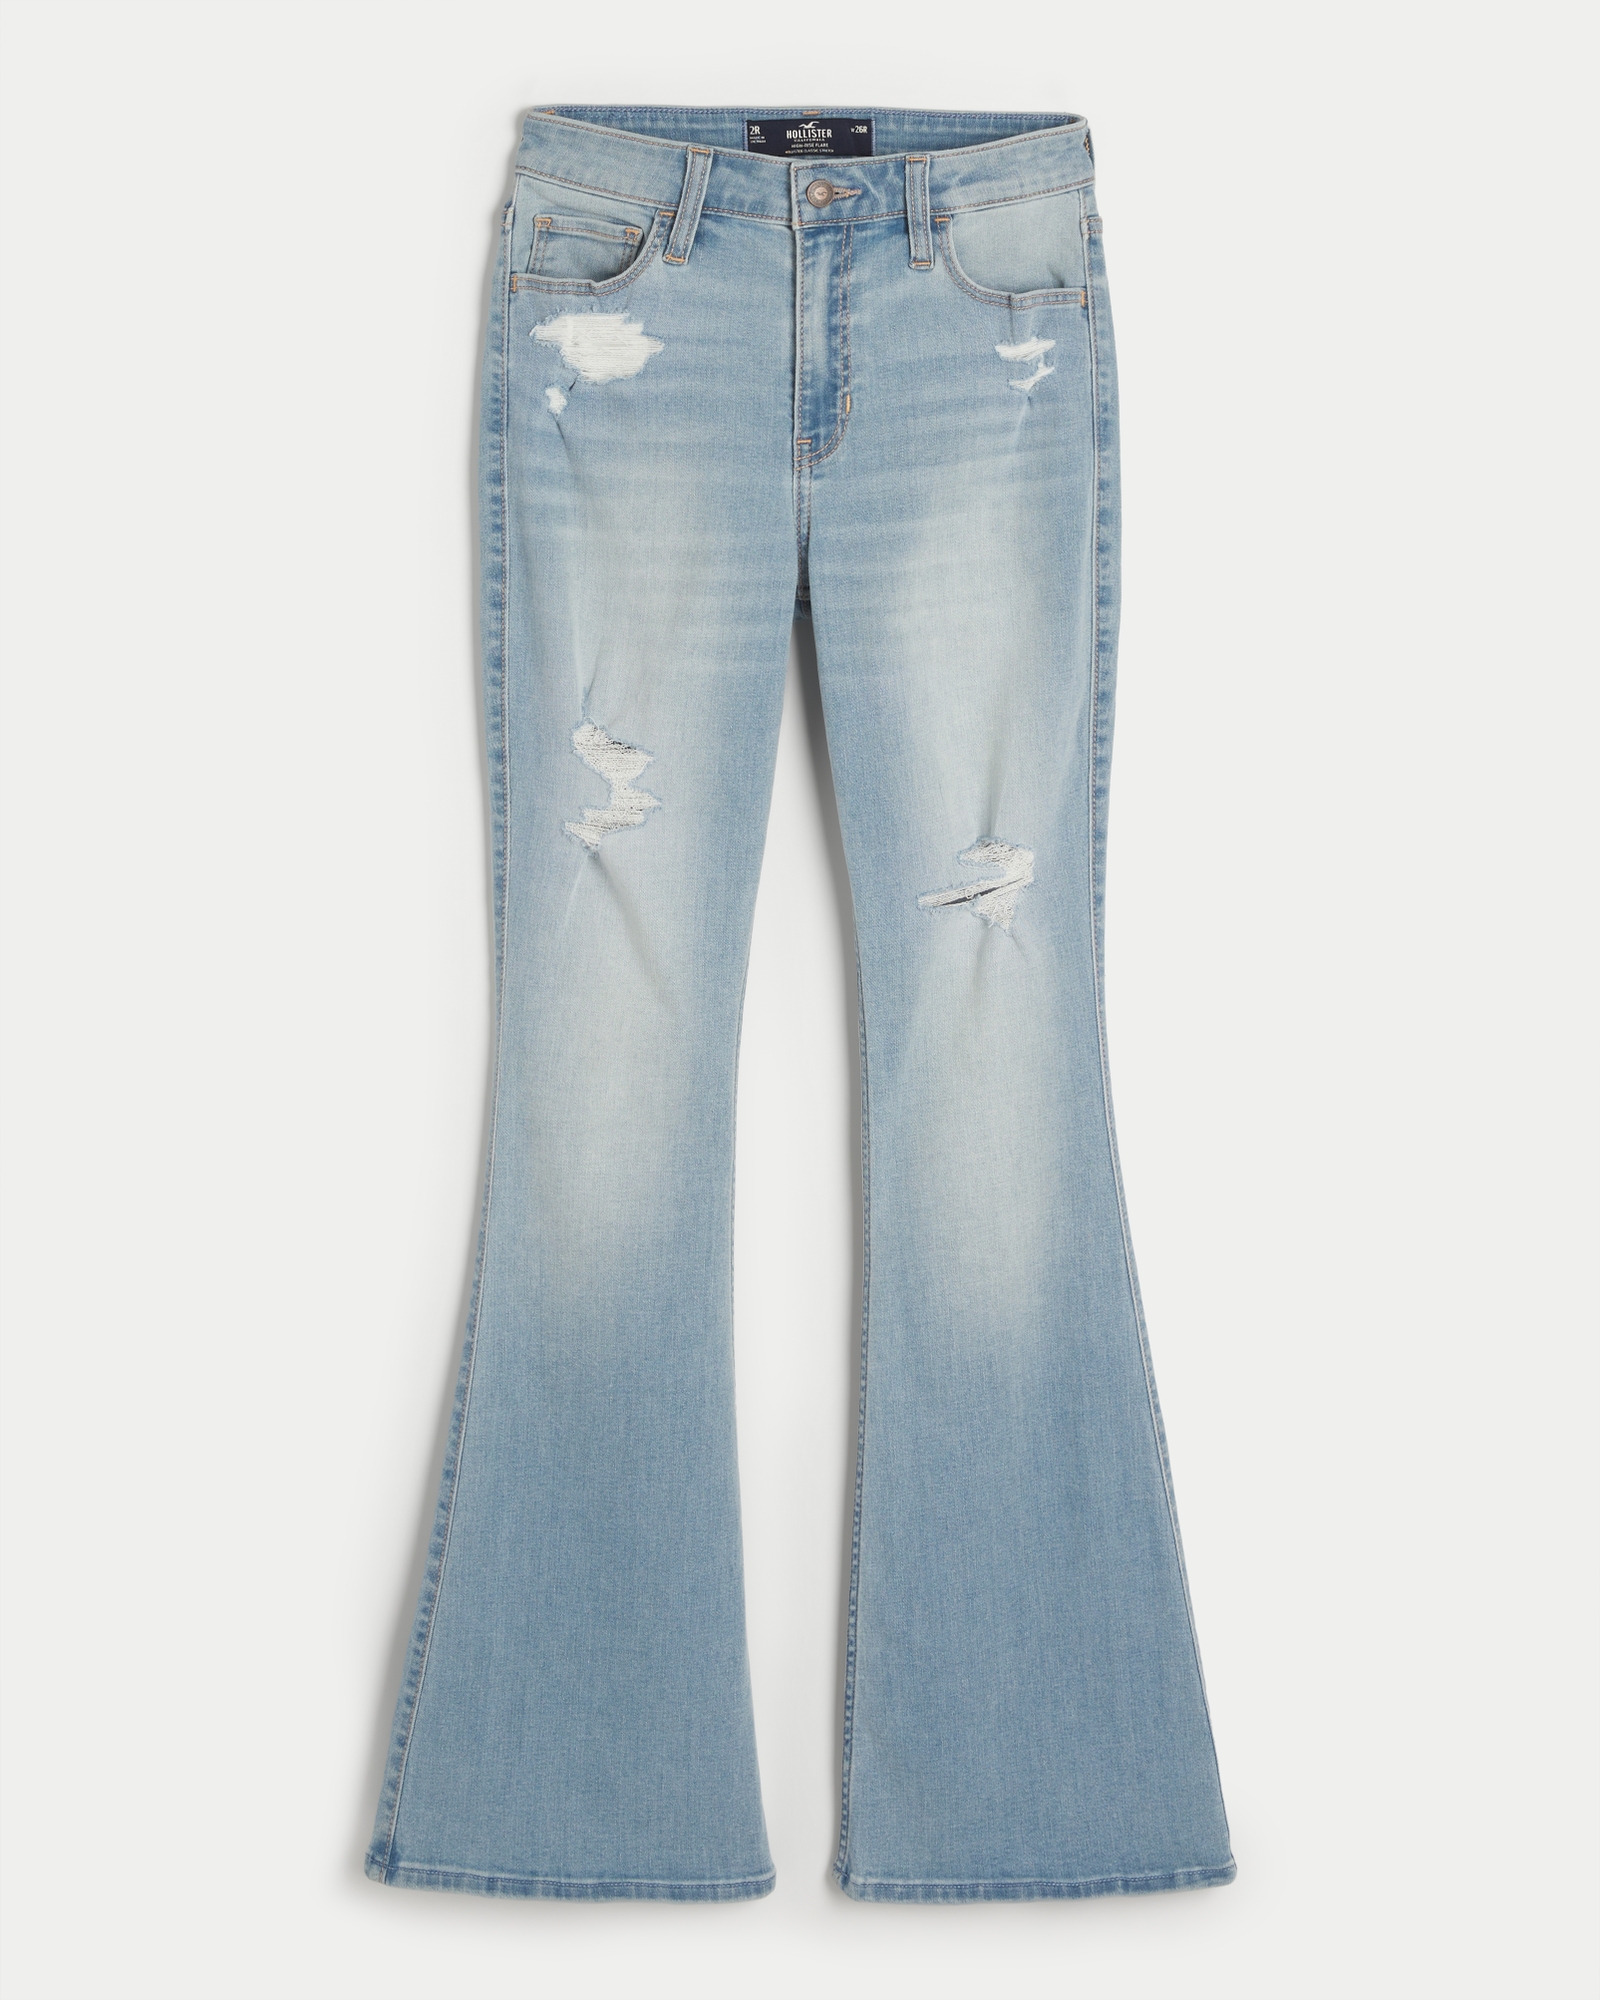 Girls Jeans & Bottoms, HollisterCo.com